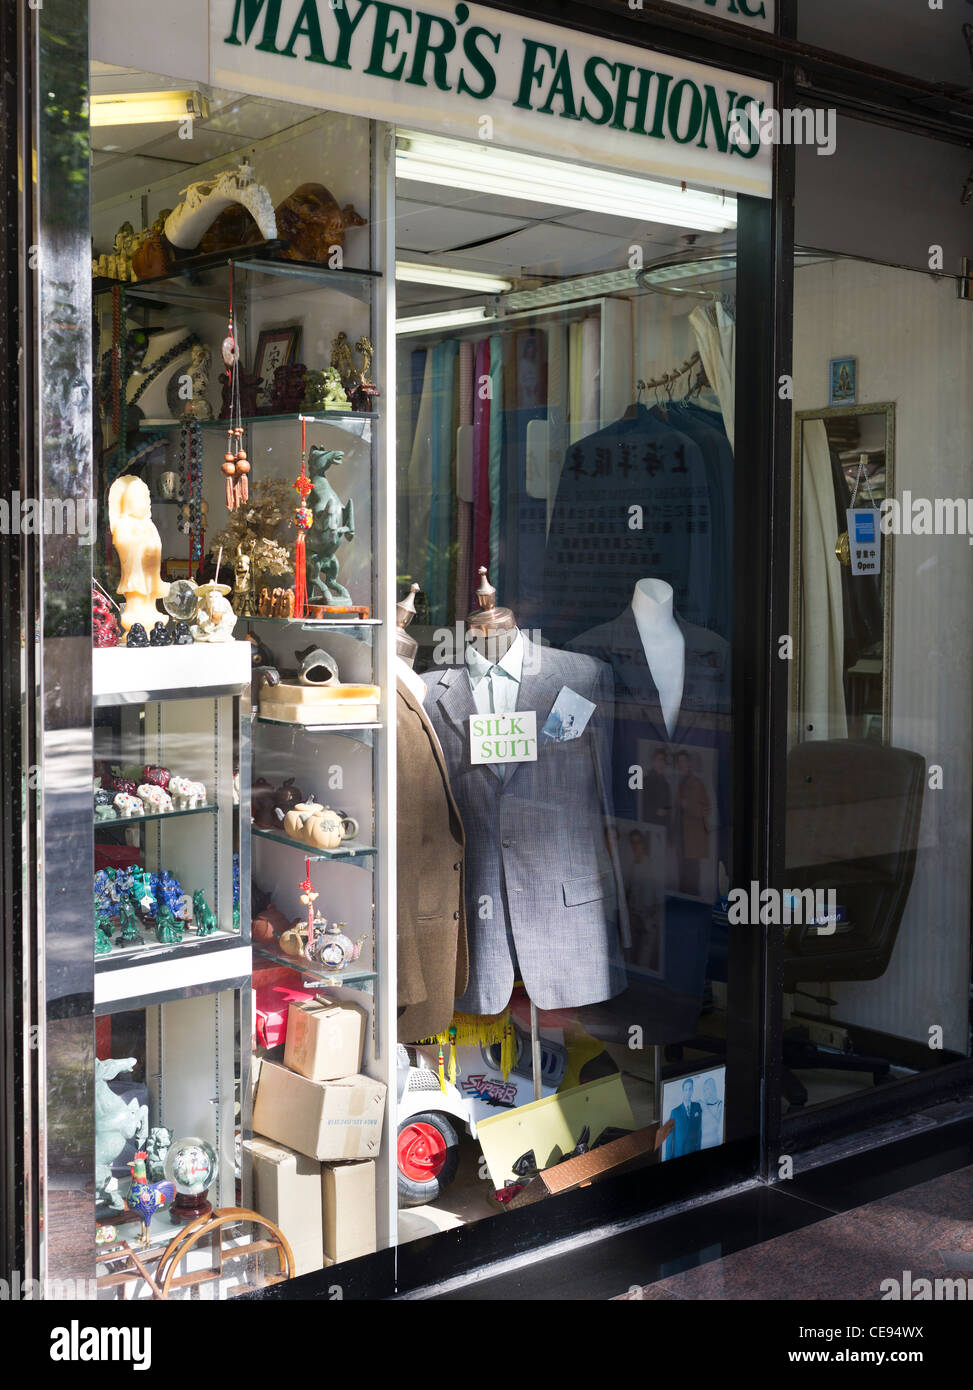 Dh tailleurs Chinois Kowloon Tsim Sha Tsui Hong Kong boutique chinoise en soie vêtements affichage fenêtre costumes costume sur mesure affiche Banque D'Images